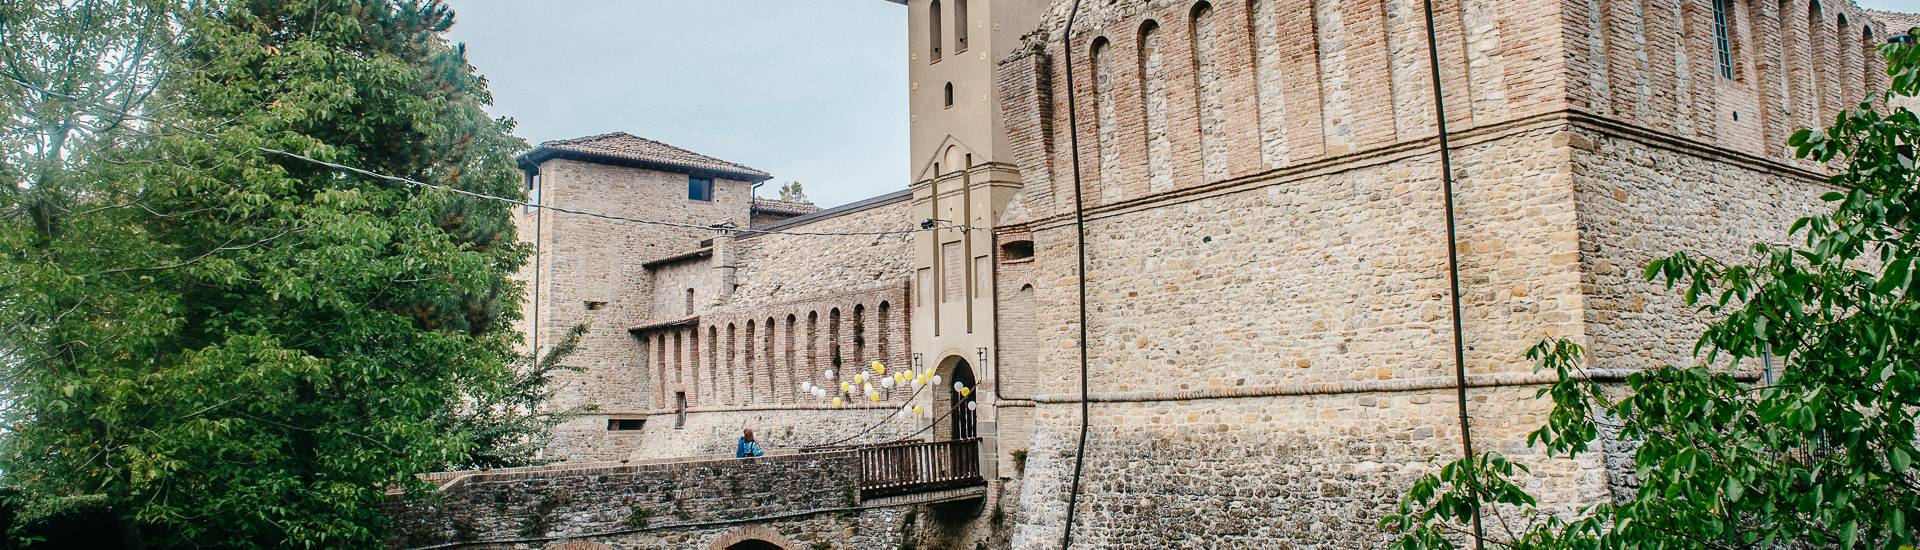 Castello di Felino - Entrance photo credits: |Piu Hotels| - Piu Hotels